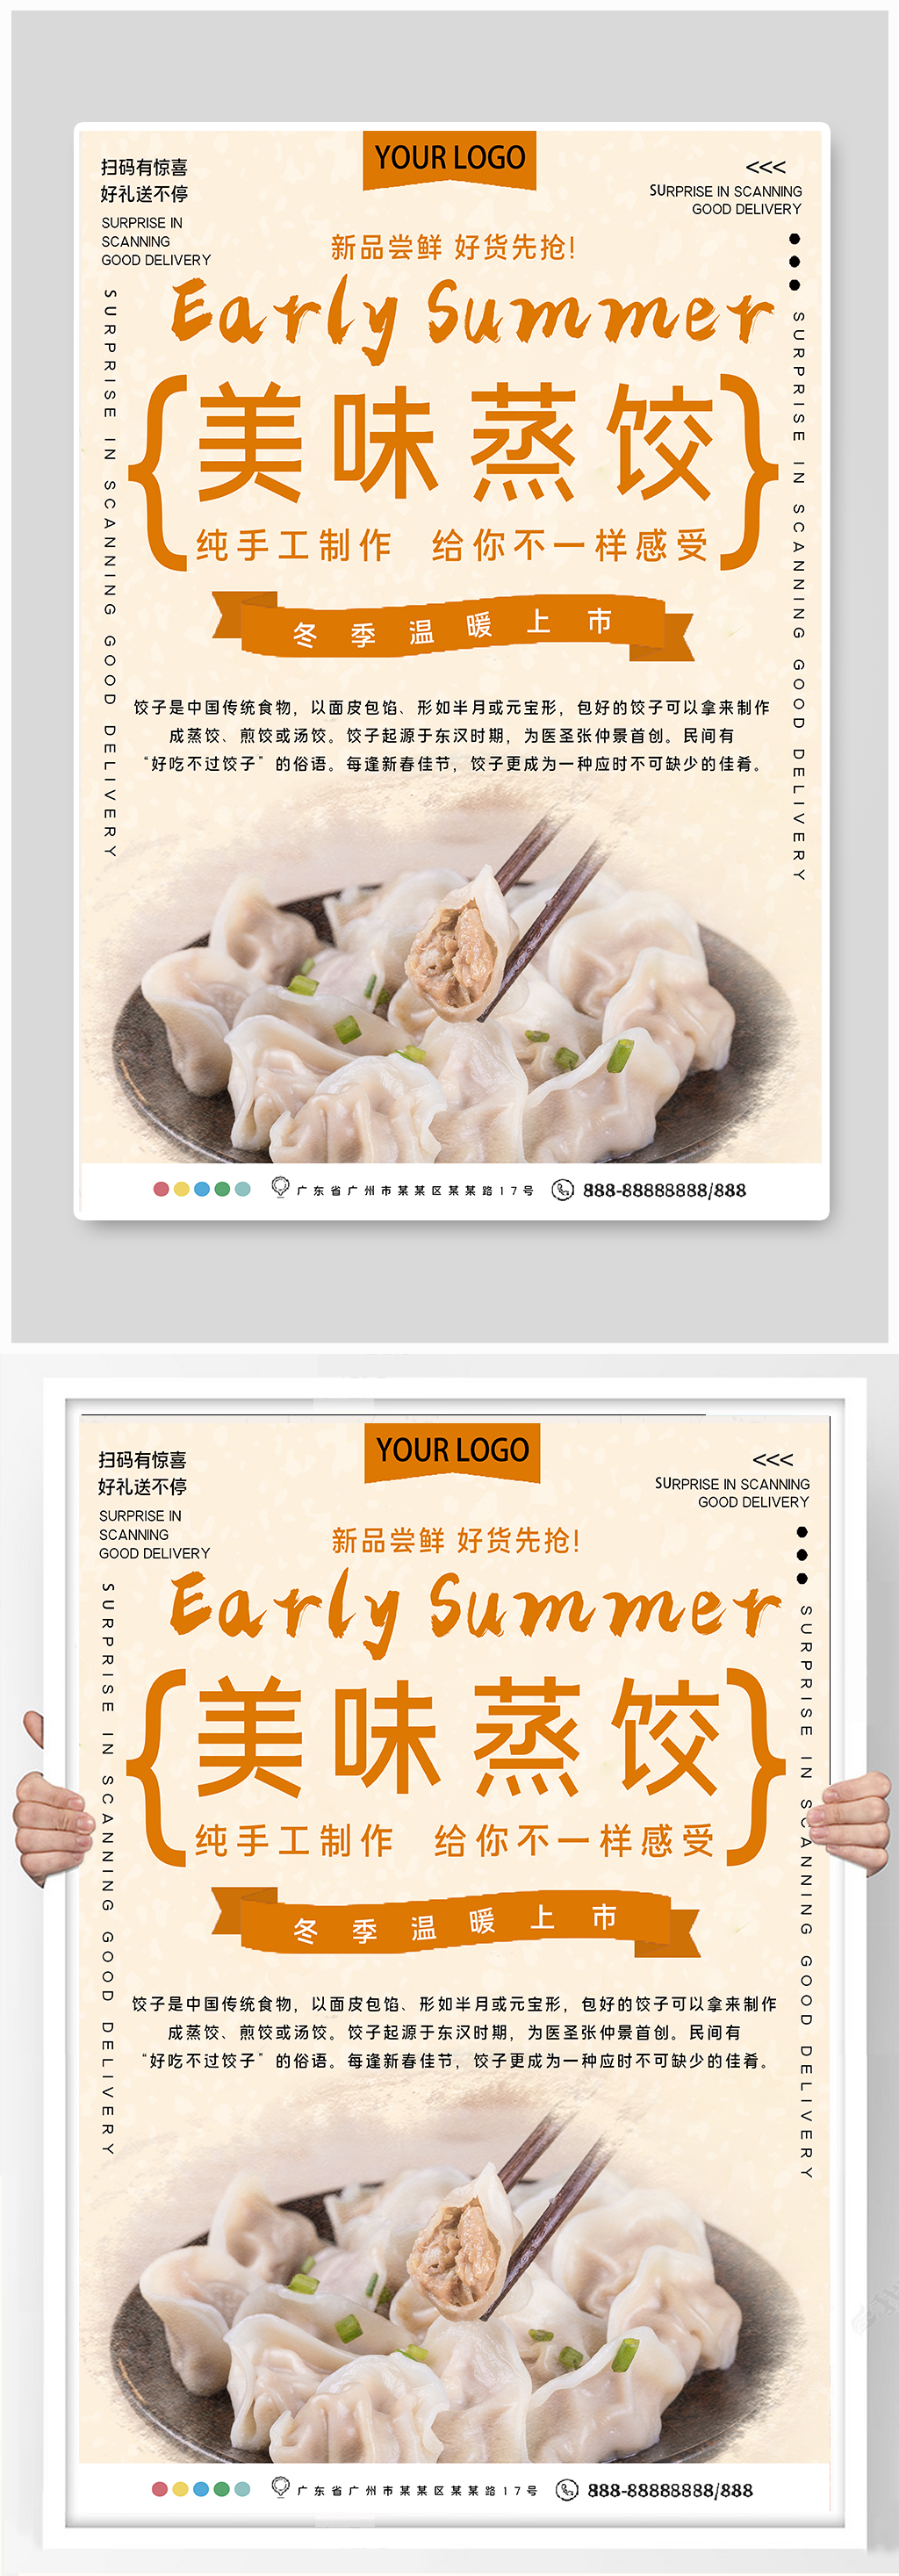 美味蒸饺美食宣传海报